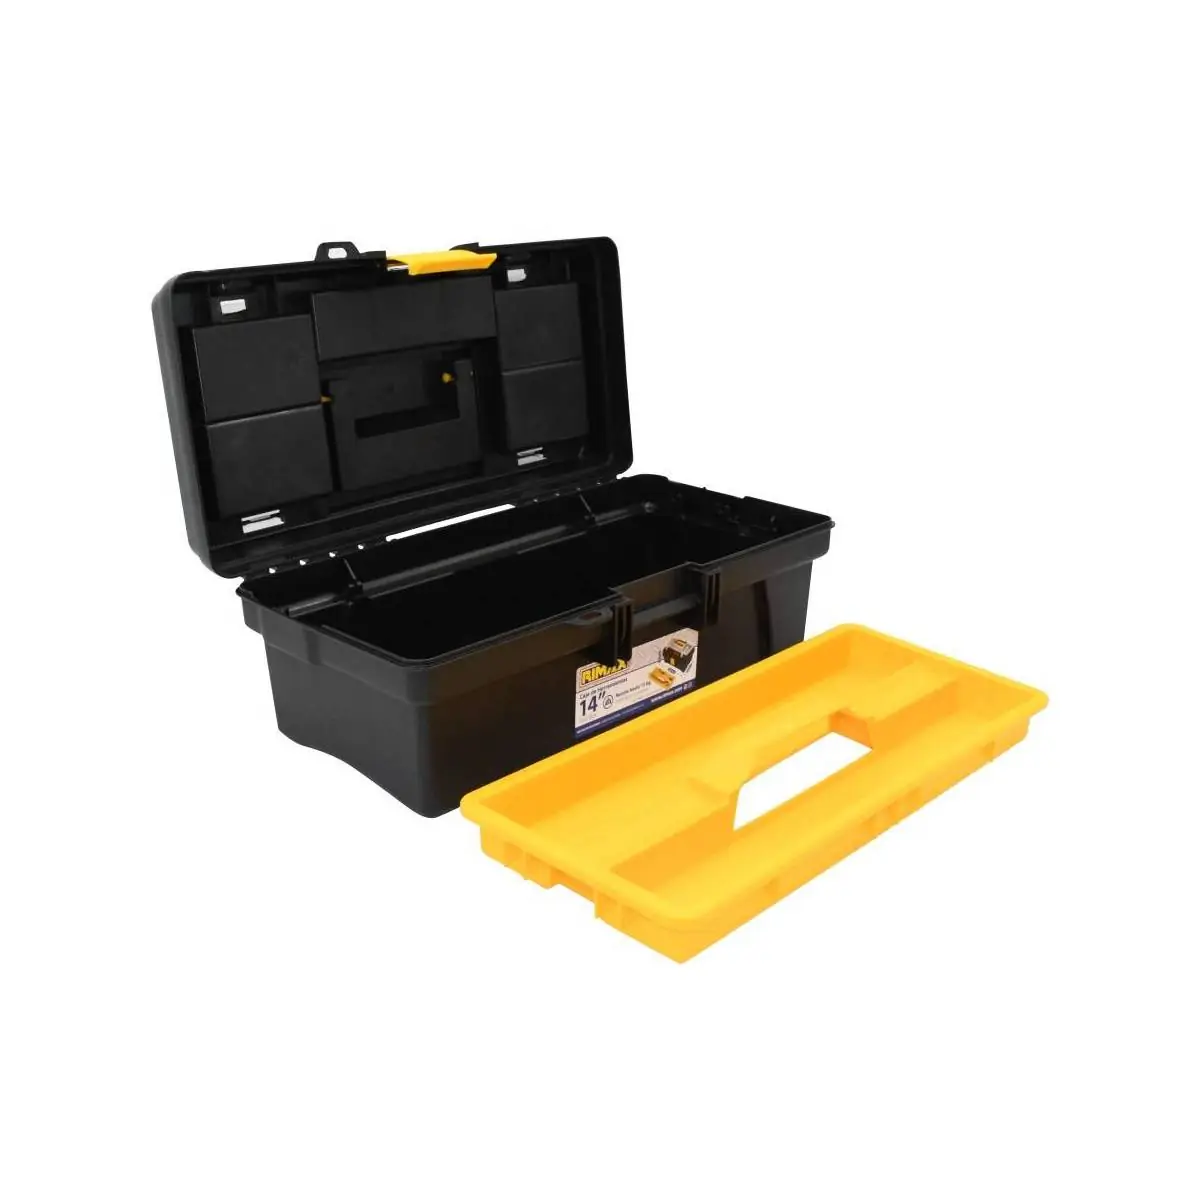 Caja para herramientas de tools box guardar tool plastico heavy duty  plastica